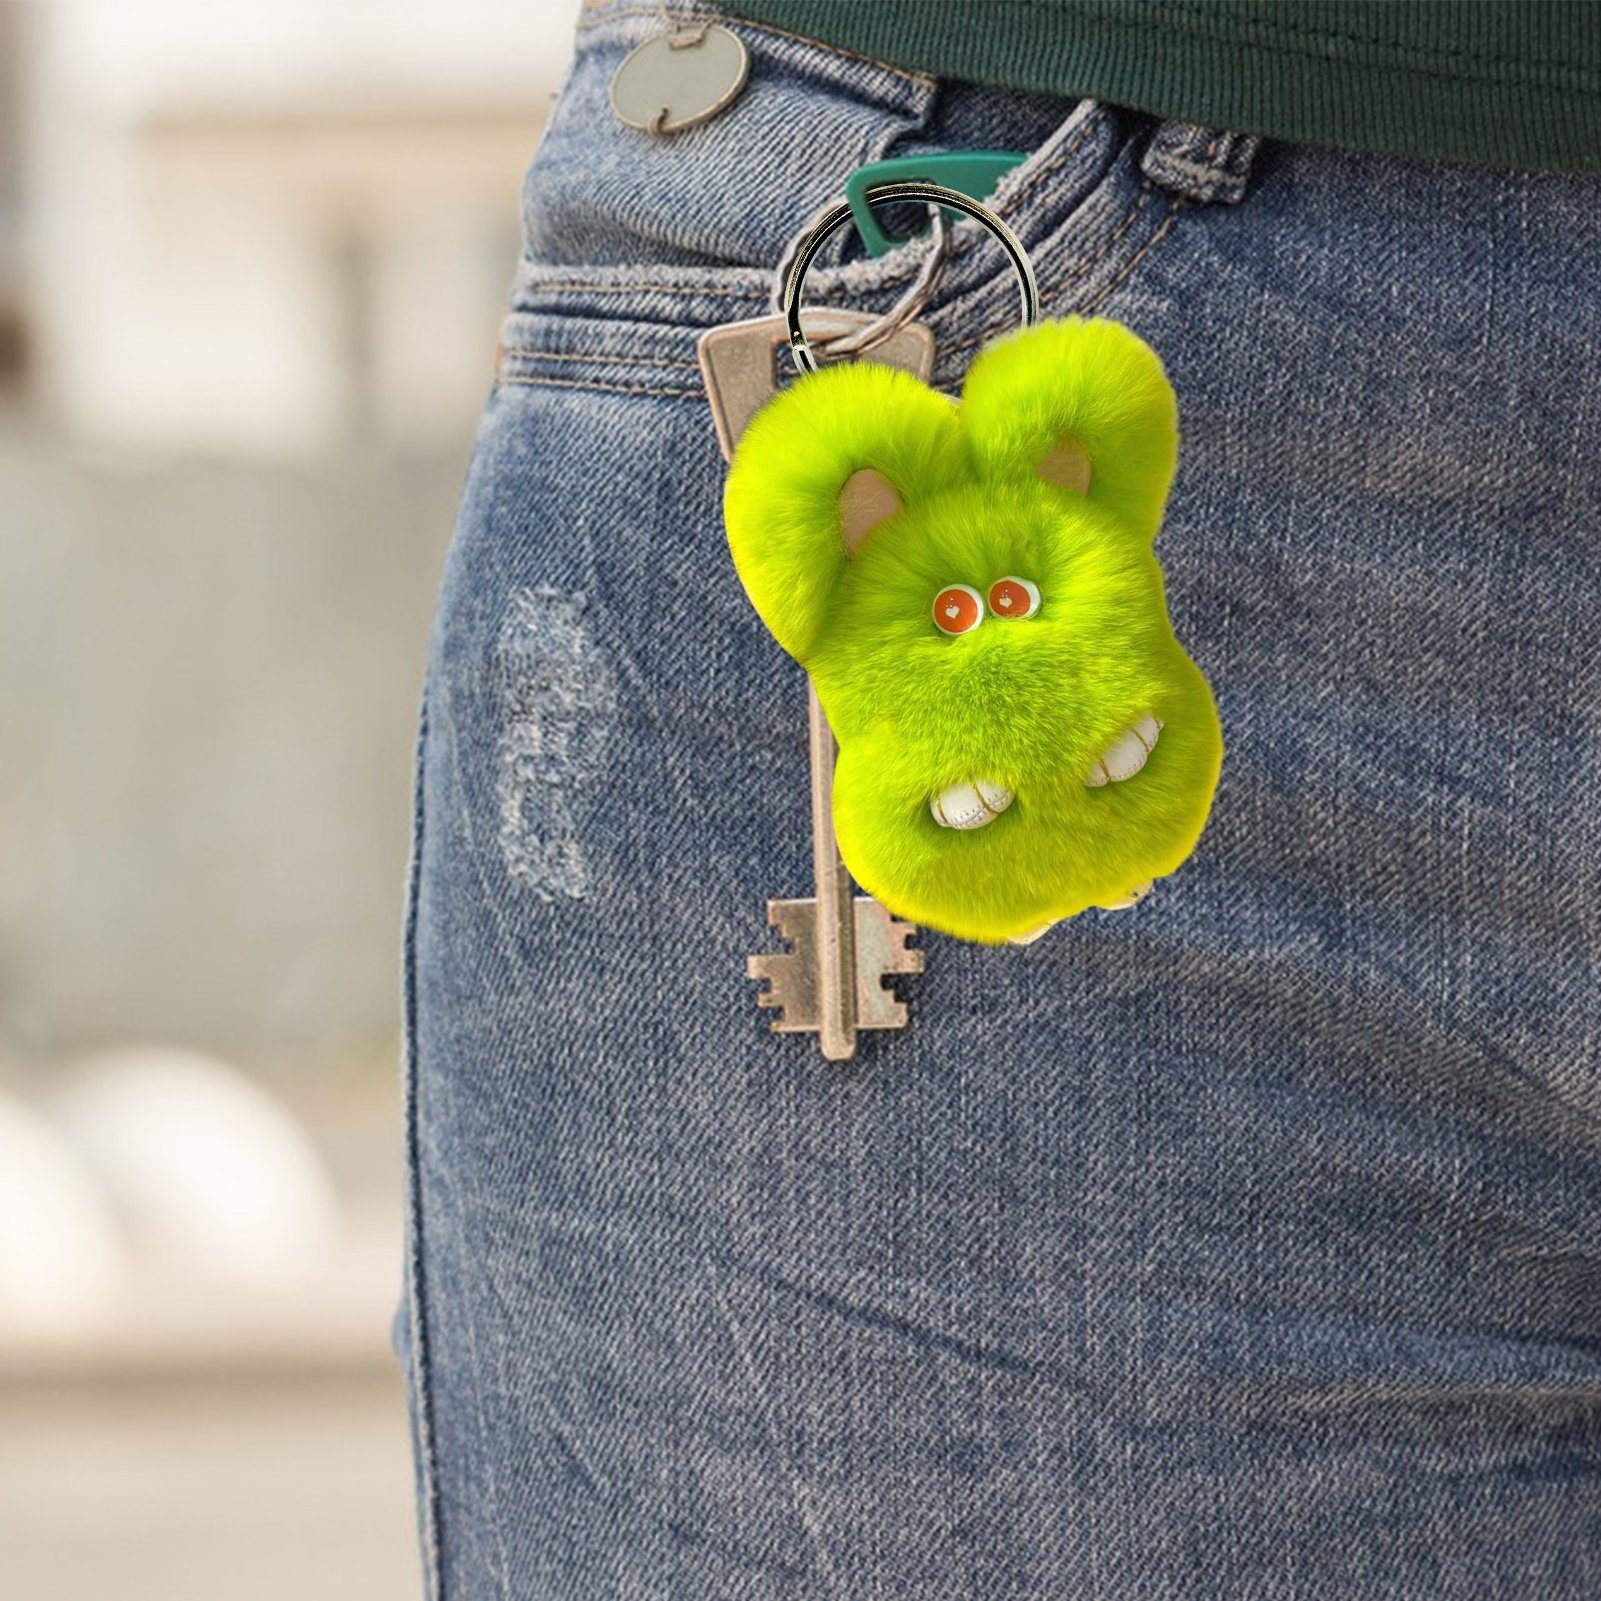 Rutaqian Häschen Schlüsselanhänger, Fluffiges Puppen Grün Weiches Kaninchen Keychain Schlüsselanhänger